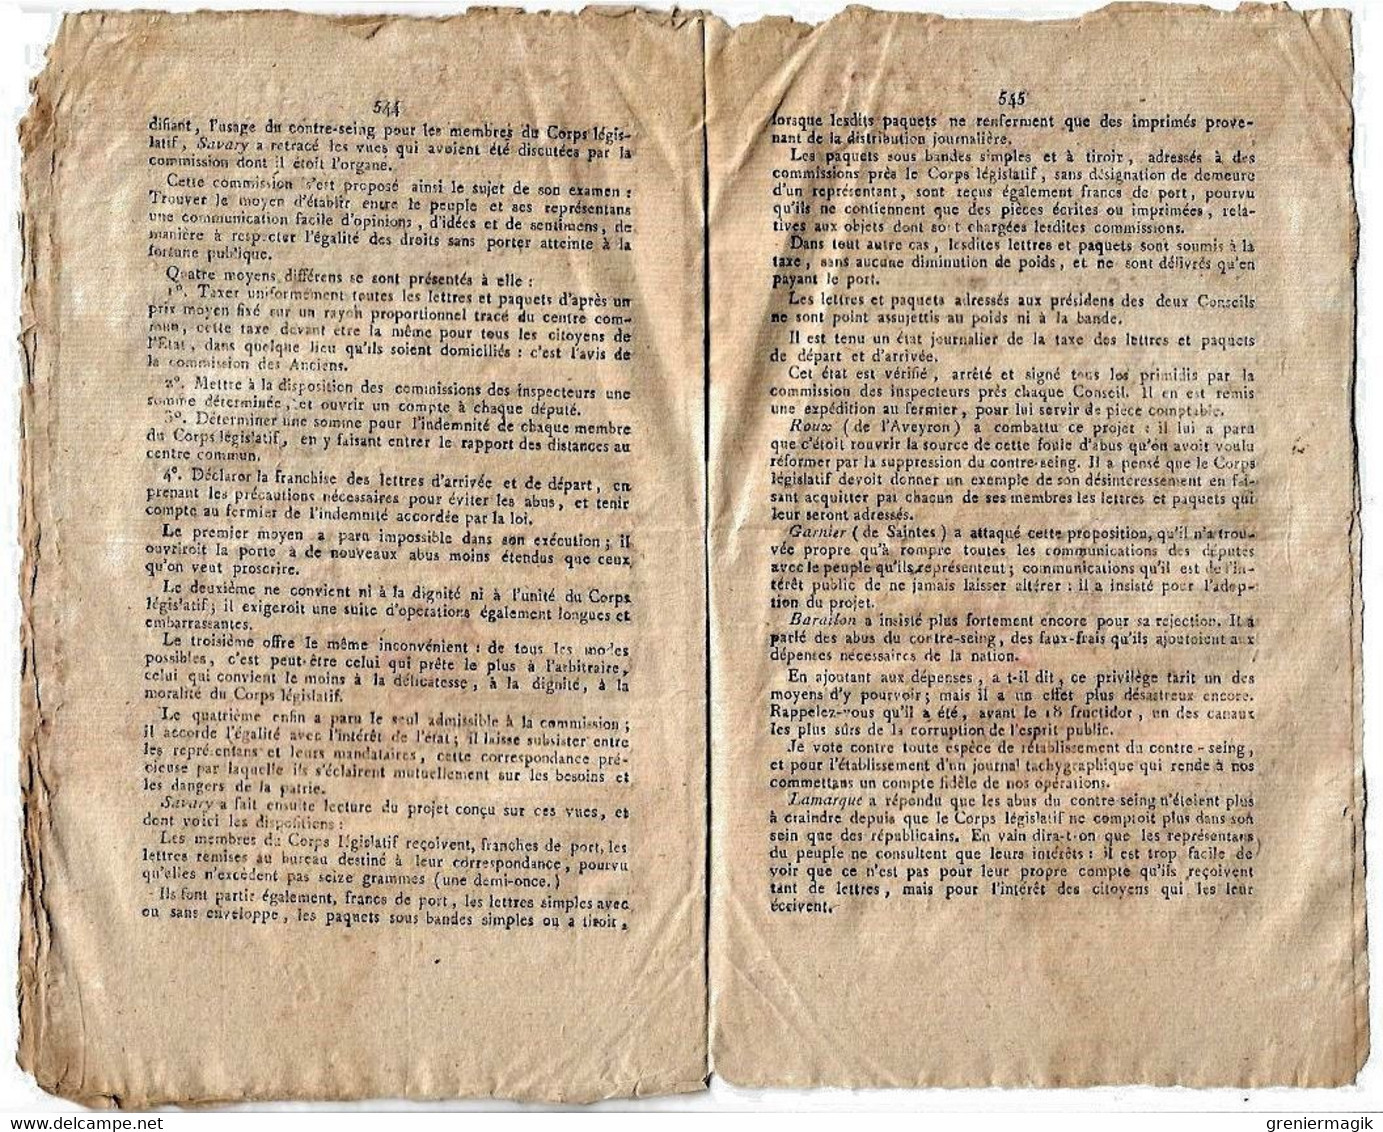 Journal des débats et lois frimaire an VI 1797 Tarn Castre Albi/Négociation France Angleterre/Landrecies/Papier-monnaie